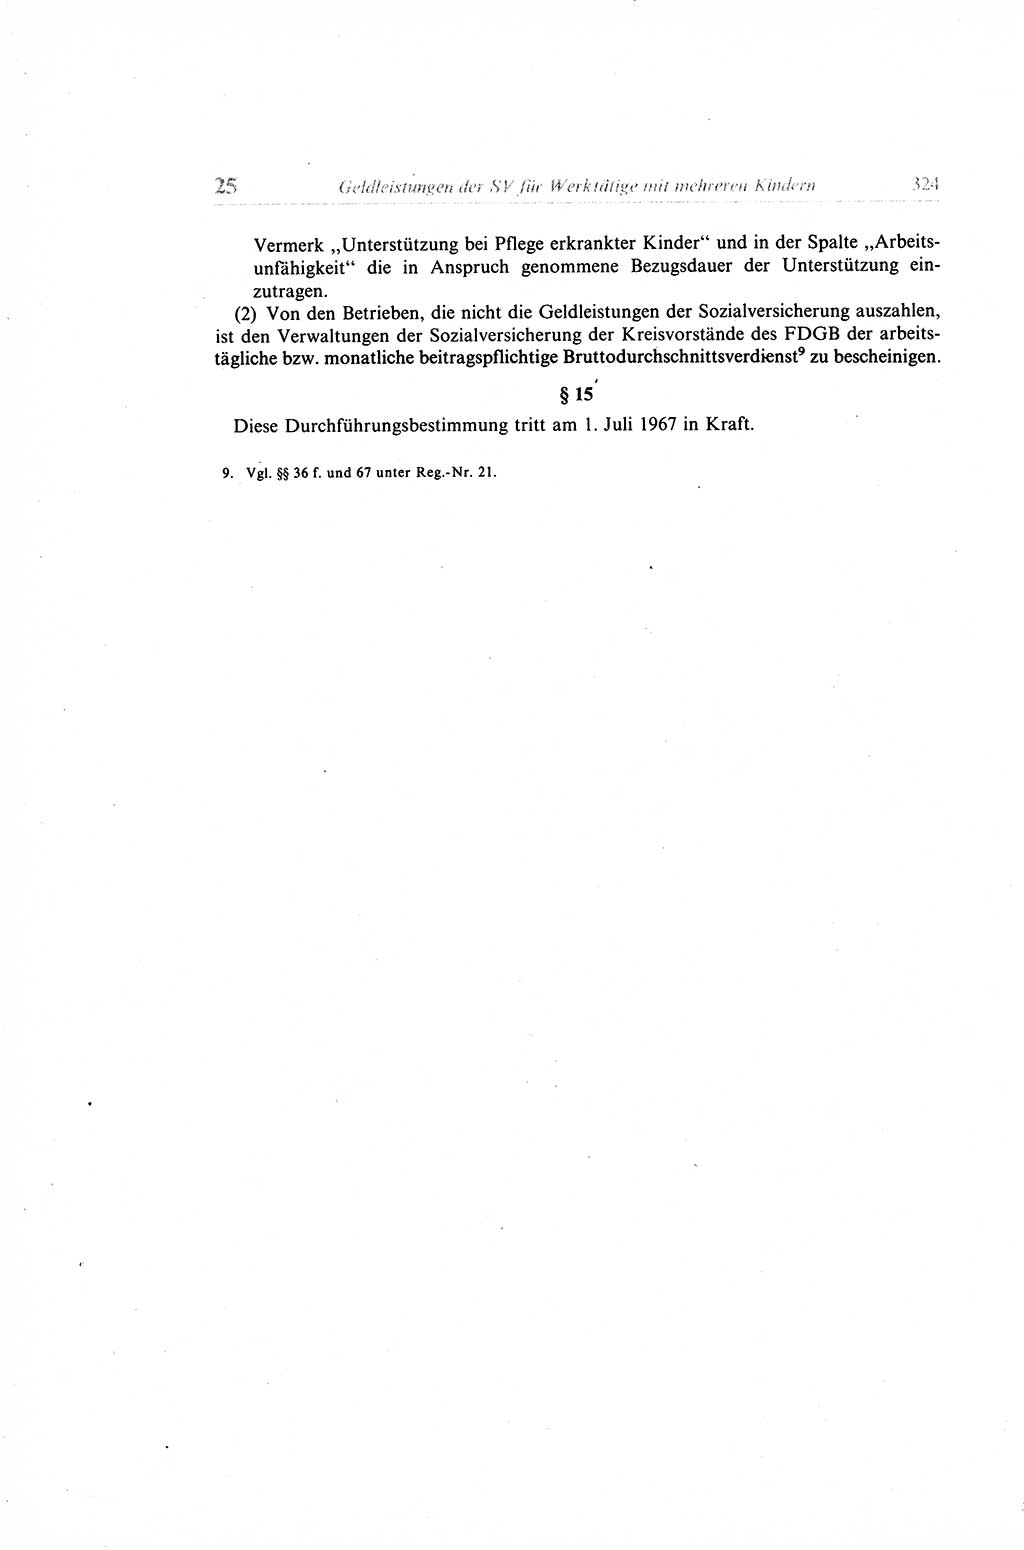 Gesetzbuch der Arbeit (GBA) und andere ausgewählte rechtliche Bestimmungen [Deutsche Demokratische Republik (DDR)] 1968, Seite 324 (GBA DDR 1968, S. 324)